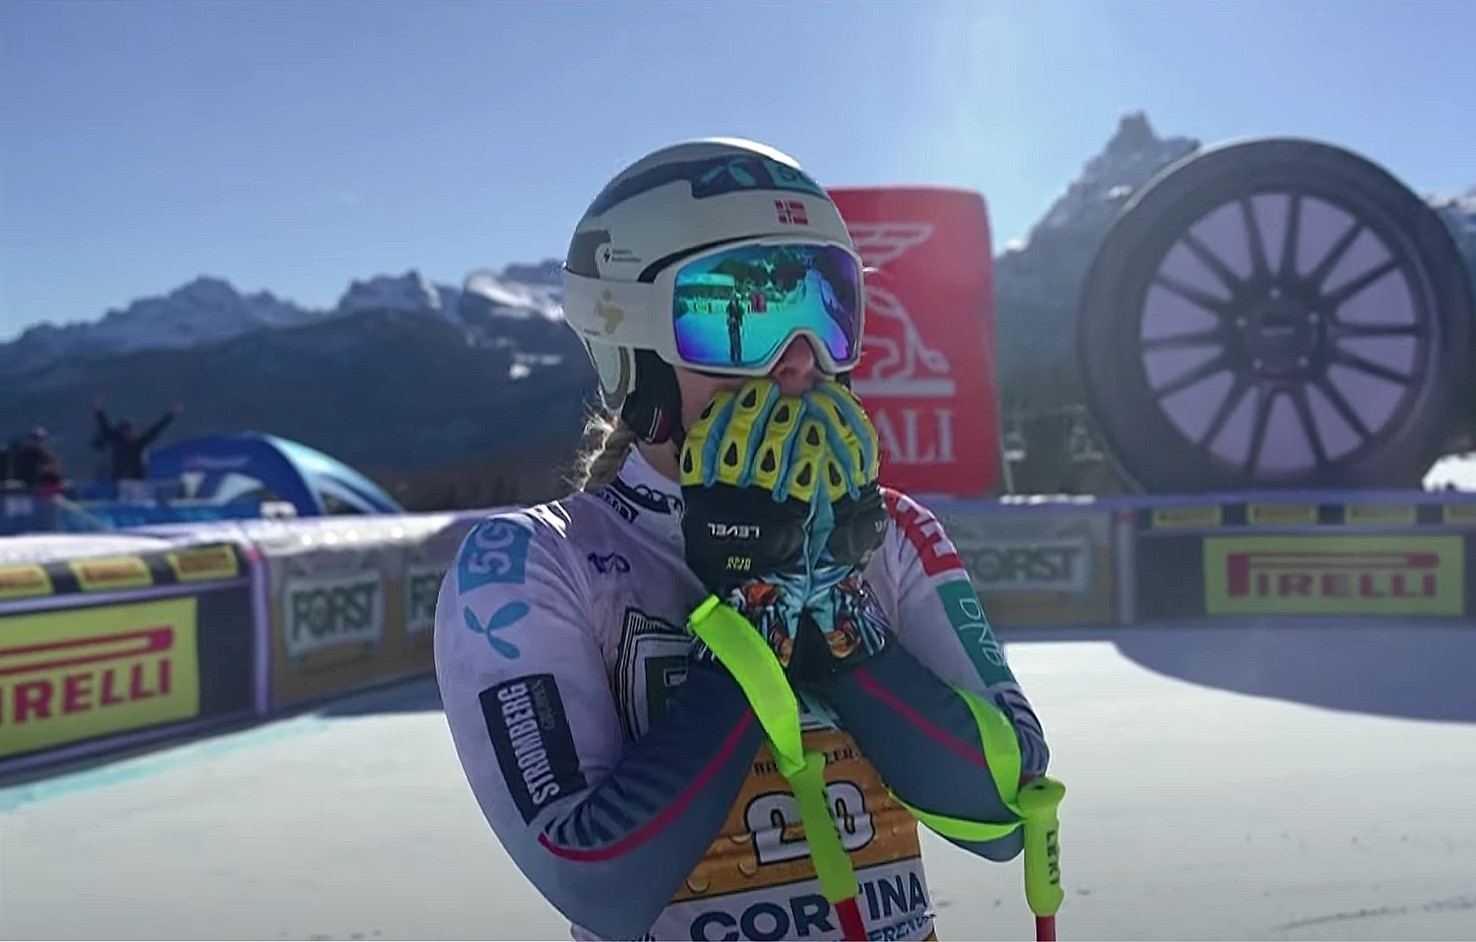 Mowinckel sorprende y logra su primera victoria en descenso en Cortina d'Ampezzo